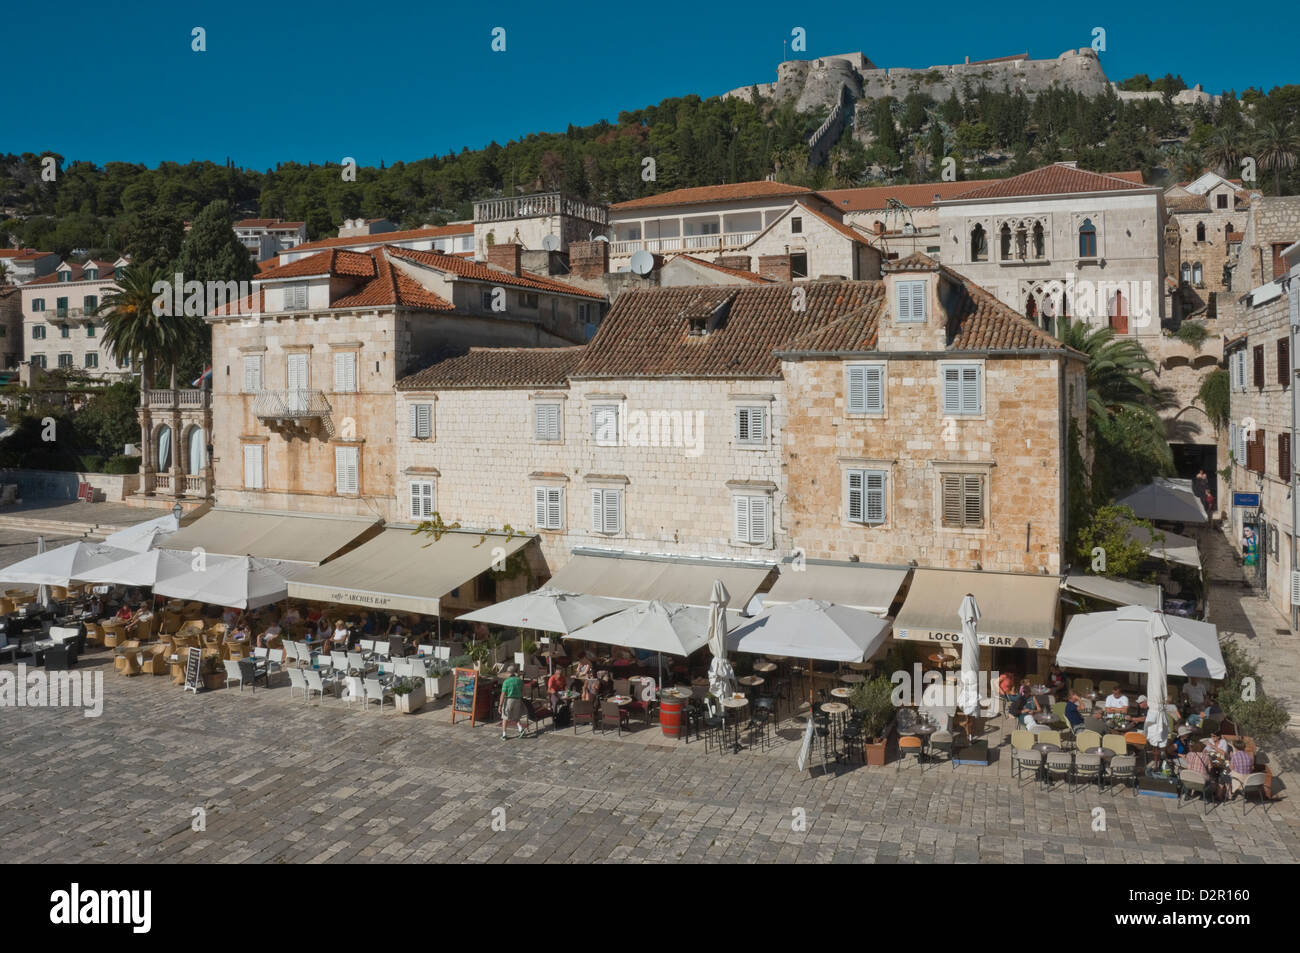 Caffè nella piazza principale, dominato dall'antica fortezza, nella città medievale di Hvar Hvar, isola della Dalmazia, Croazia Foto Stock